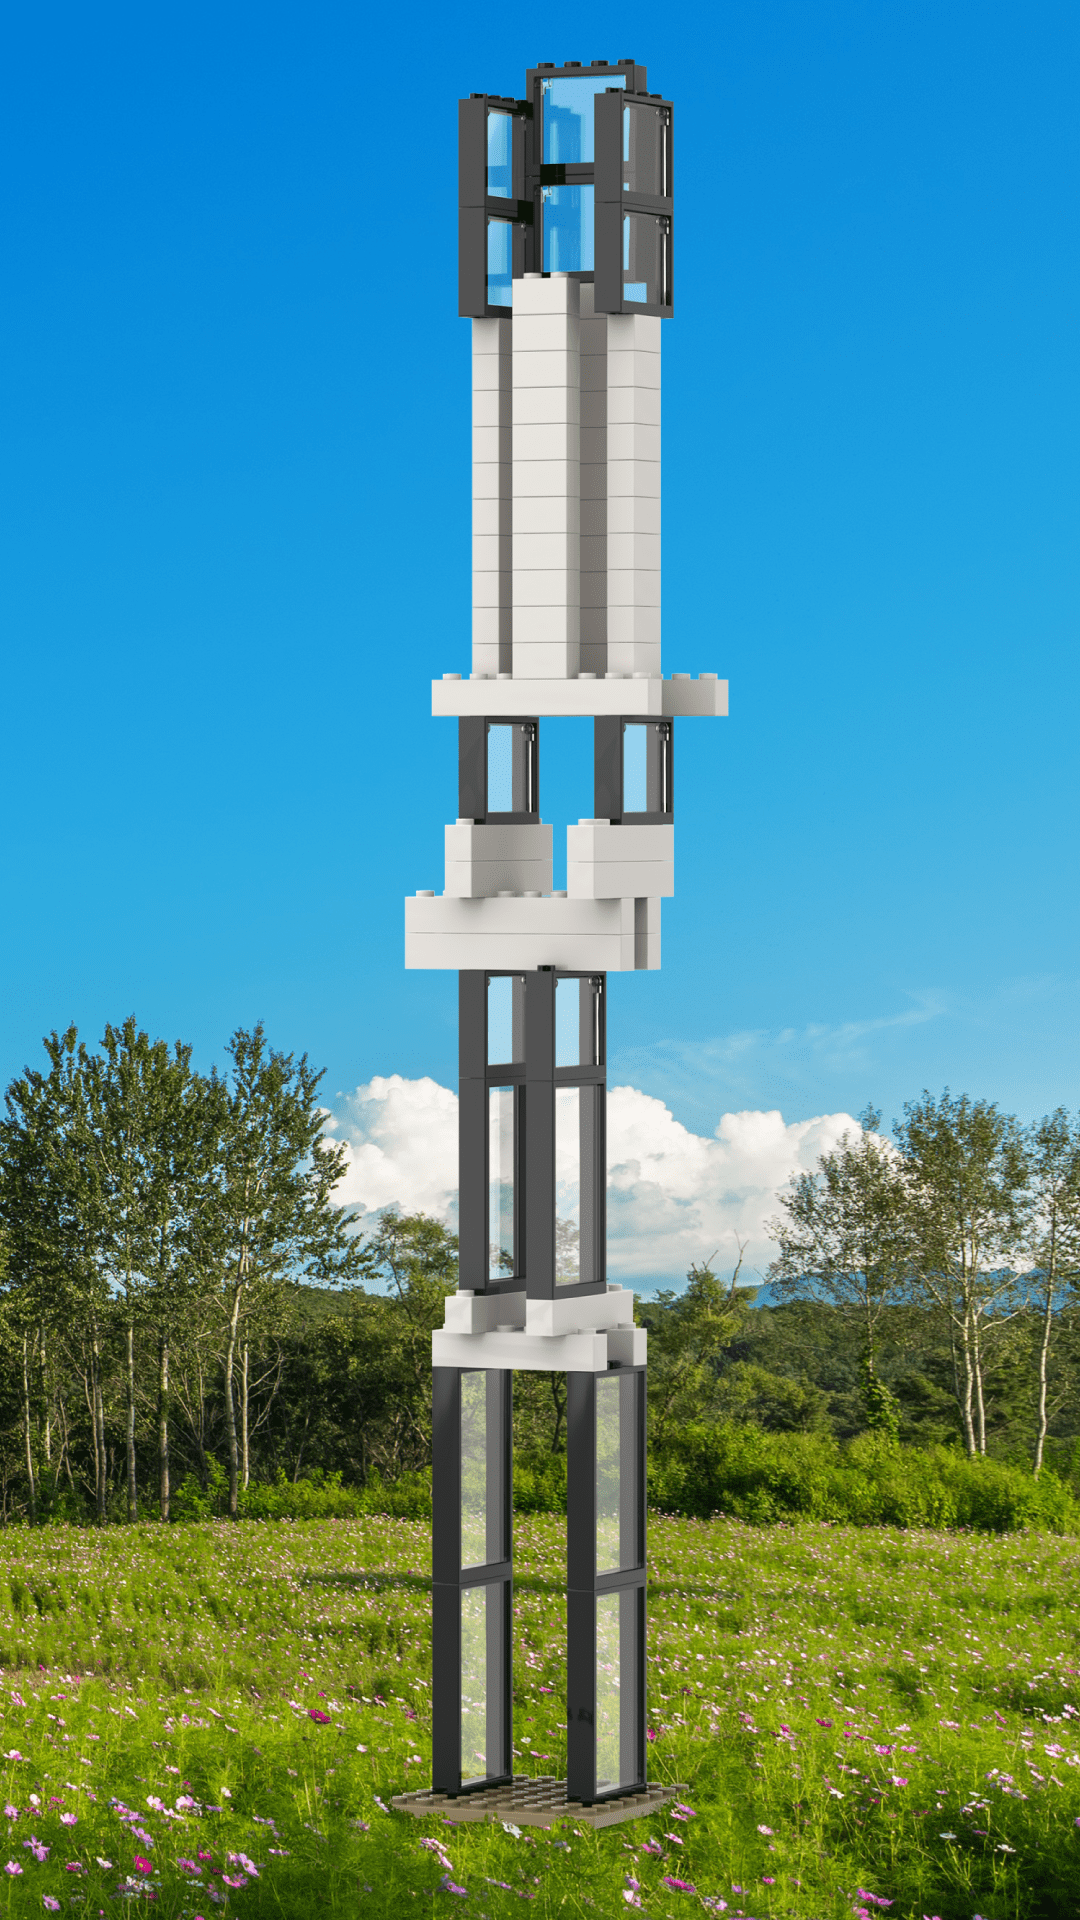 Billede af et LEGO tårn